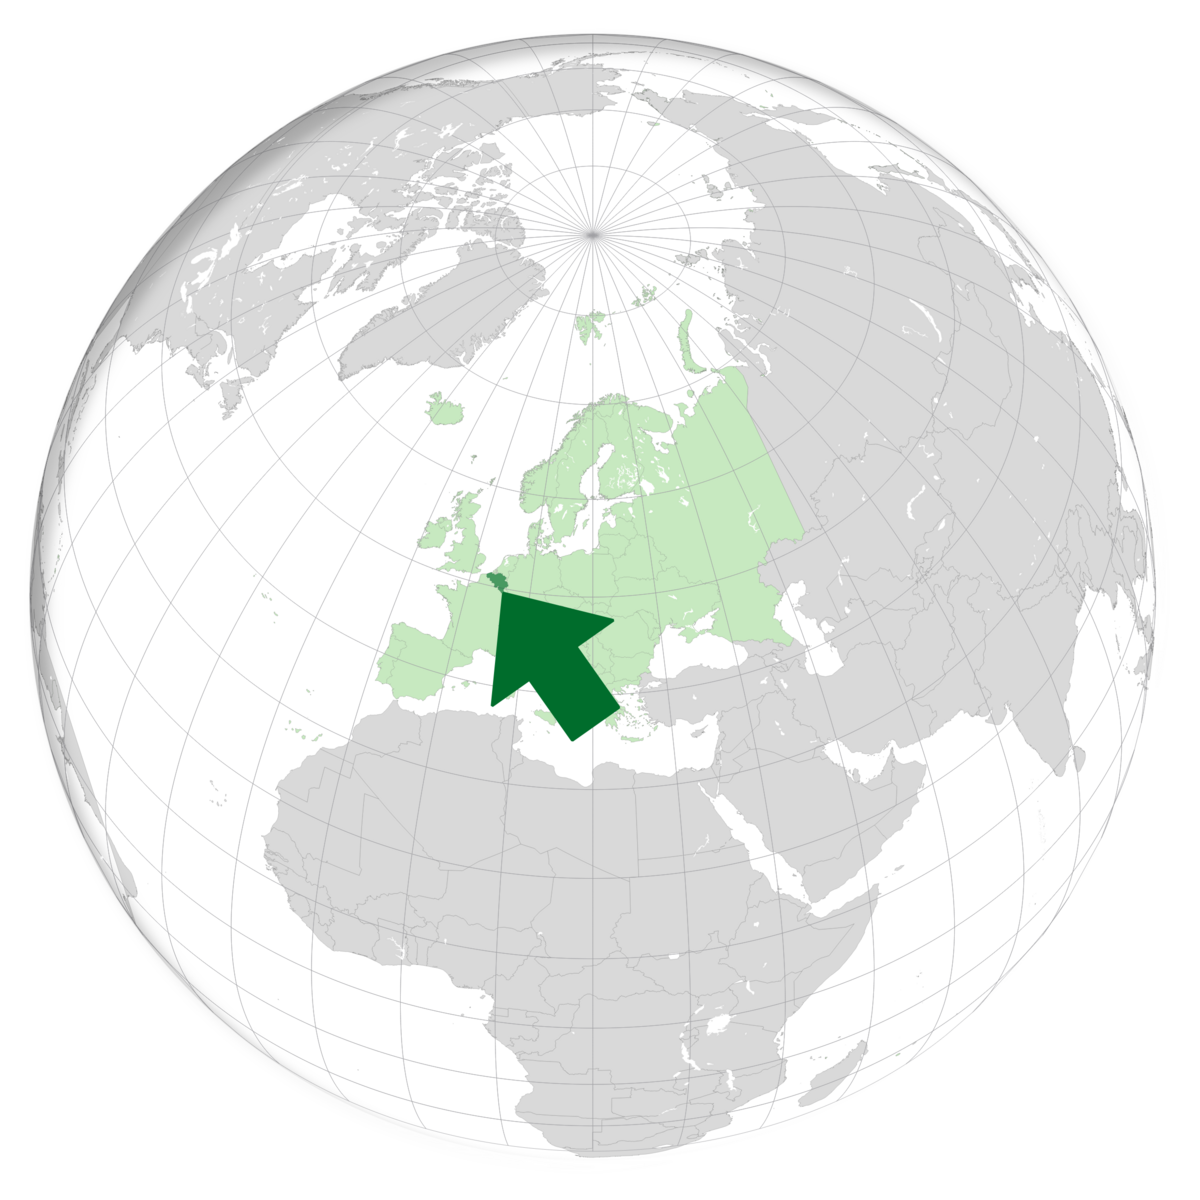 plassering av Belgia på jordkloden. Kart